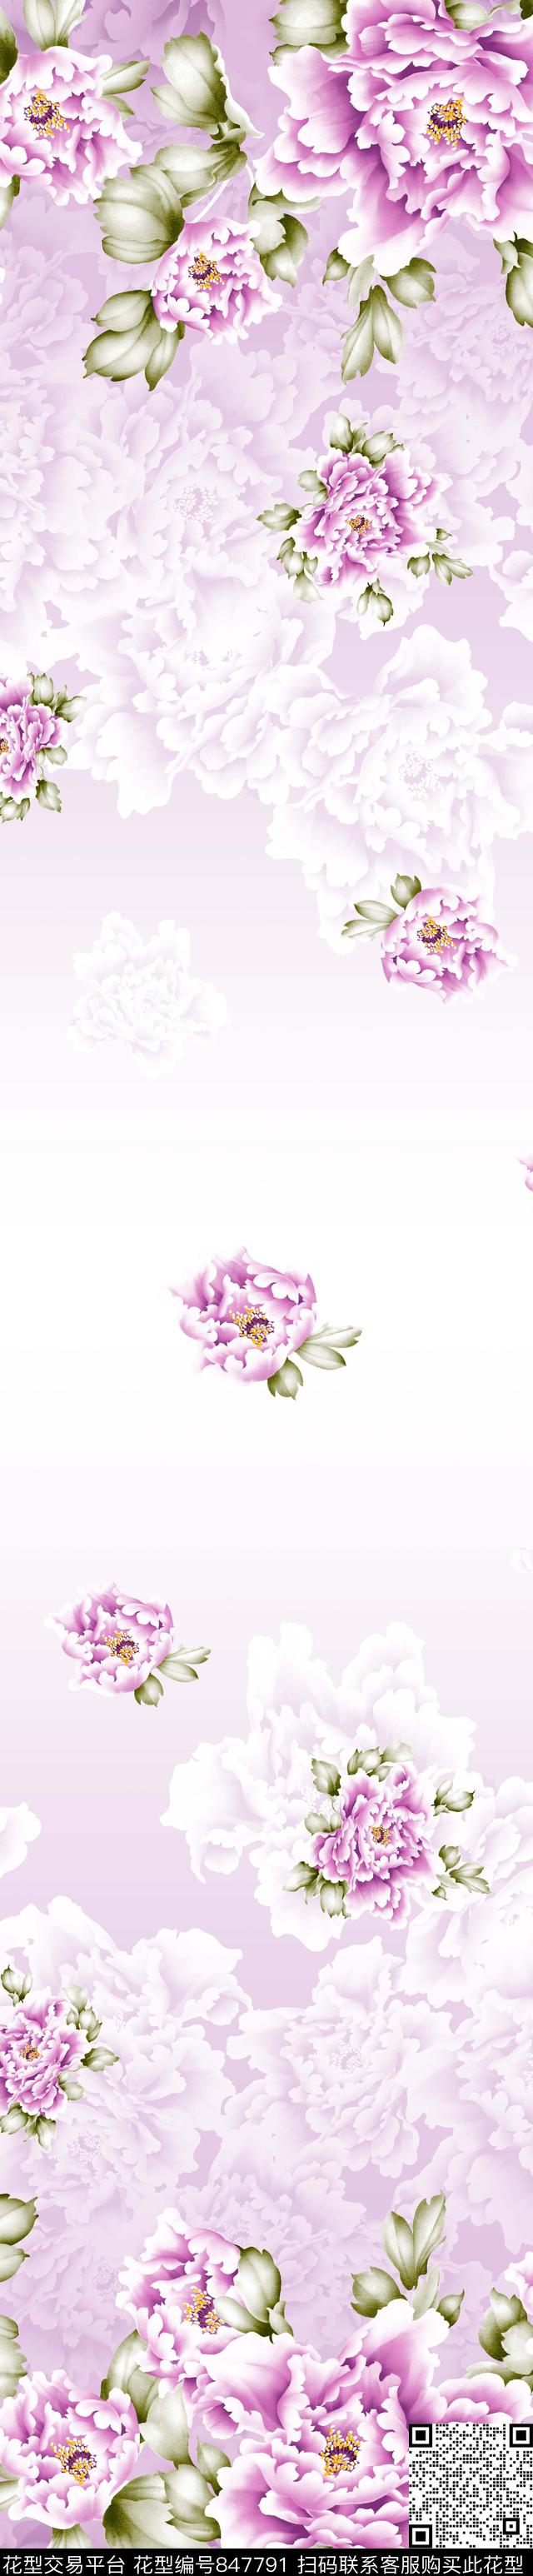 YJH170509c.jpg - 847791 - 花卉 窗帘 彩条 - 传统印花花型 － 窗帘花型设计 － 瓦栏